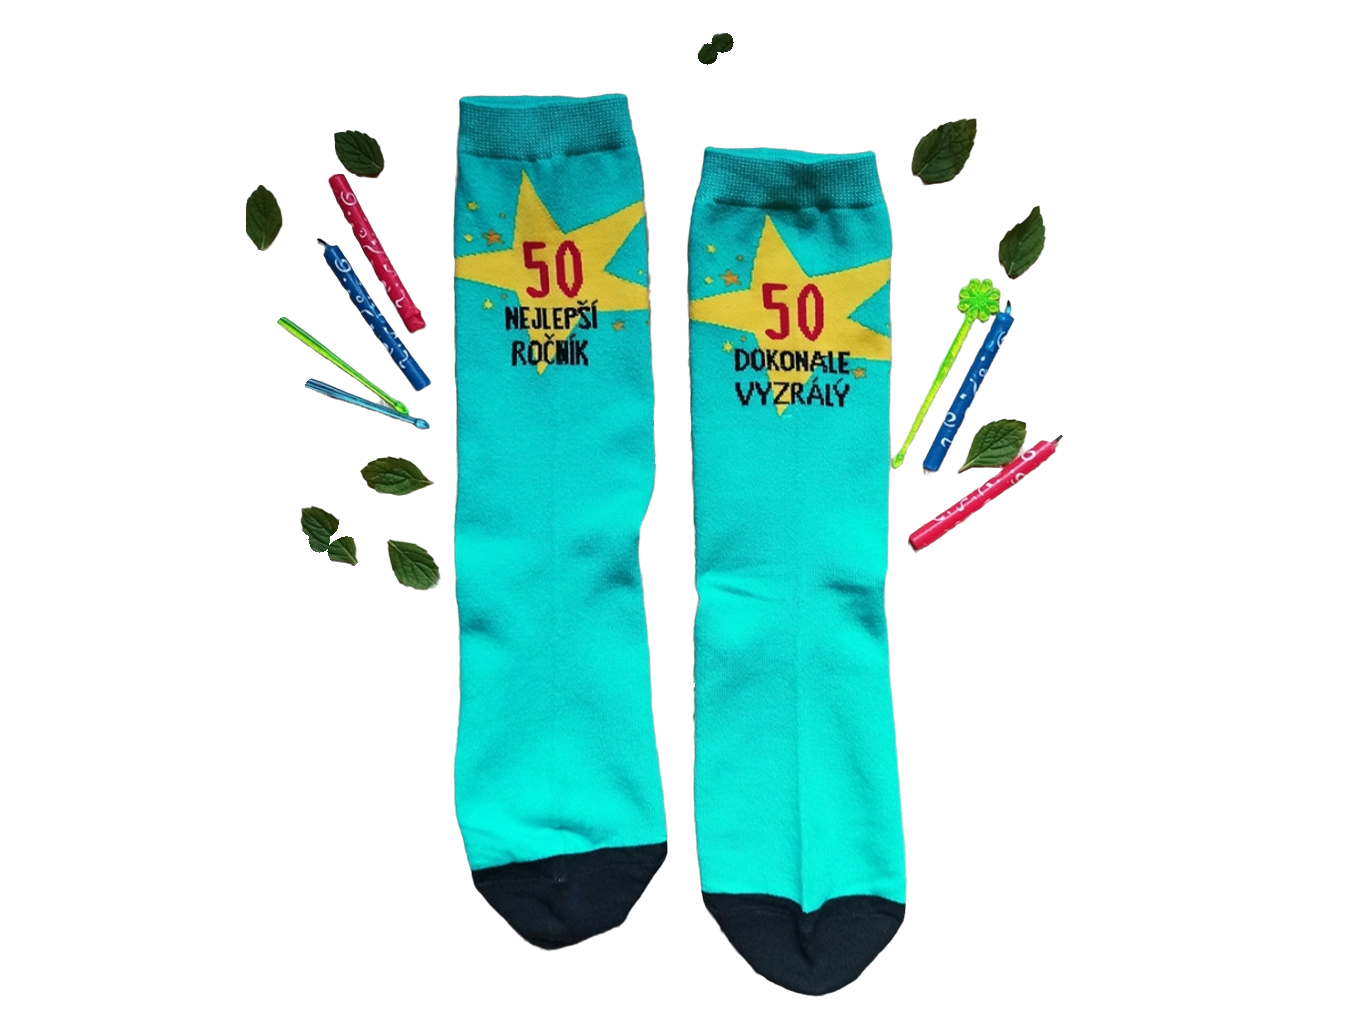 Veselé ponožky - 50 Nejlepší ročník 43-46